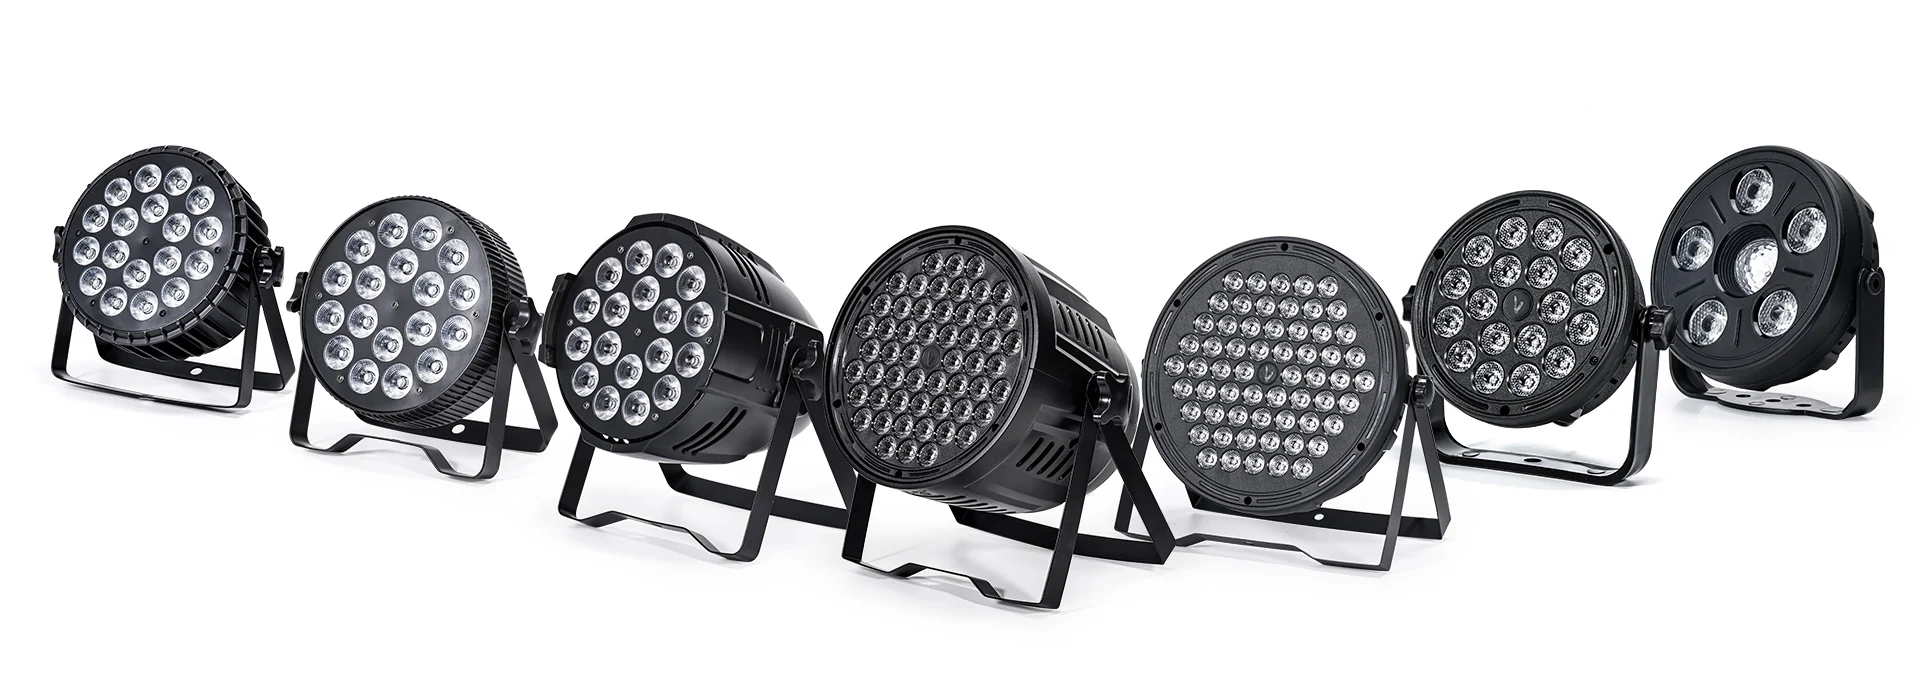 各種高品質 LED 舞檯燈 活動照明的多種選擇